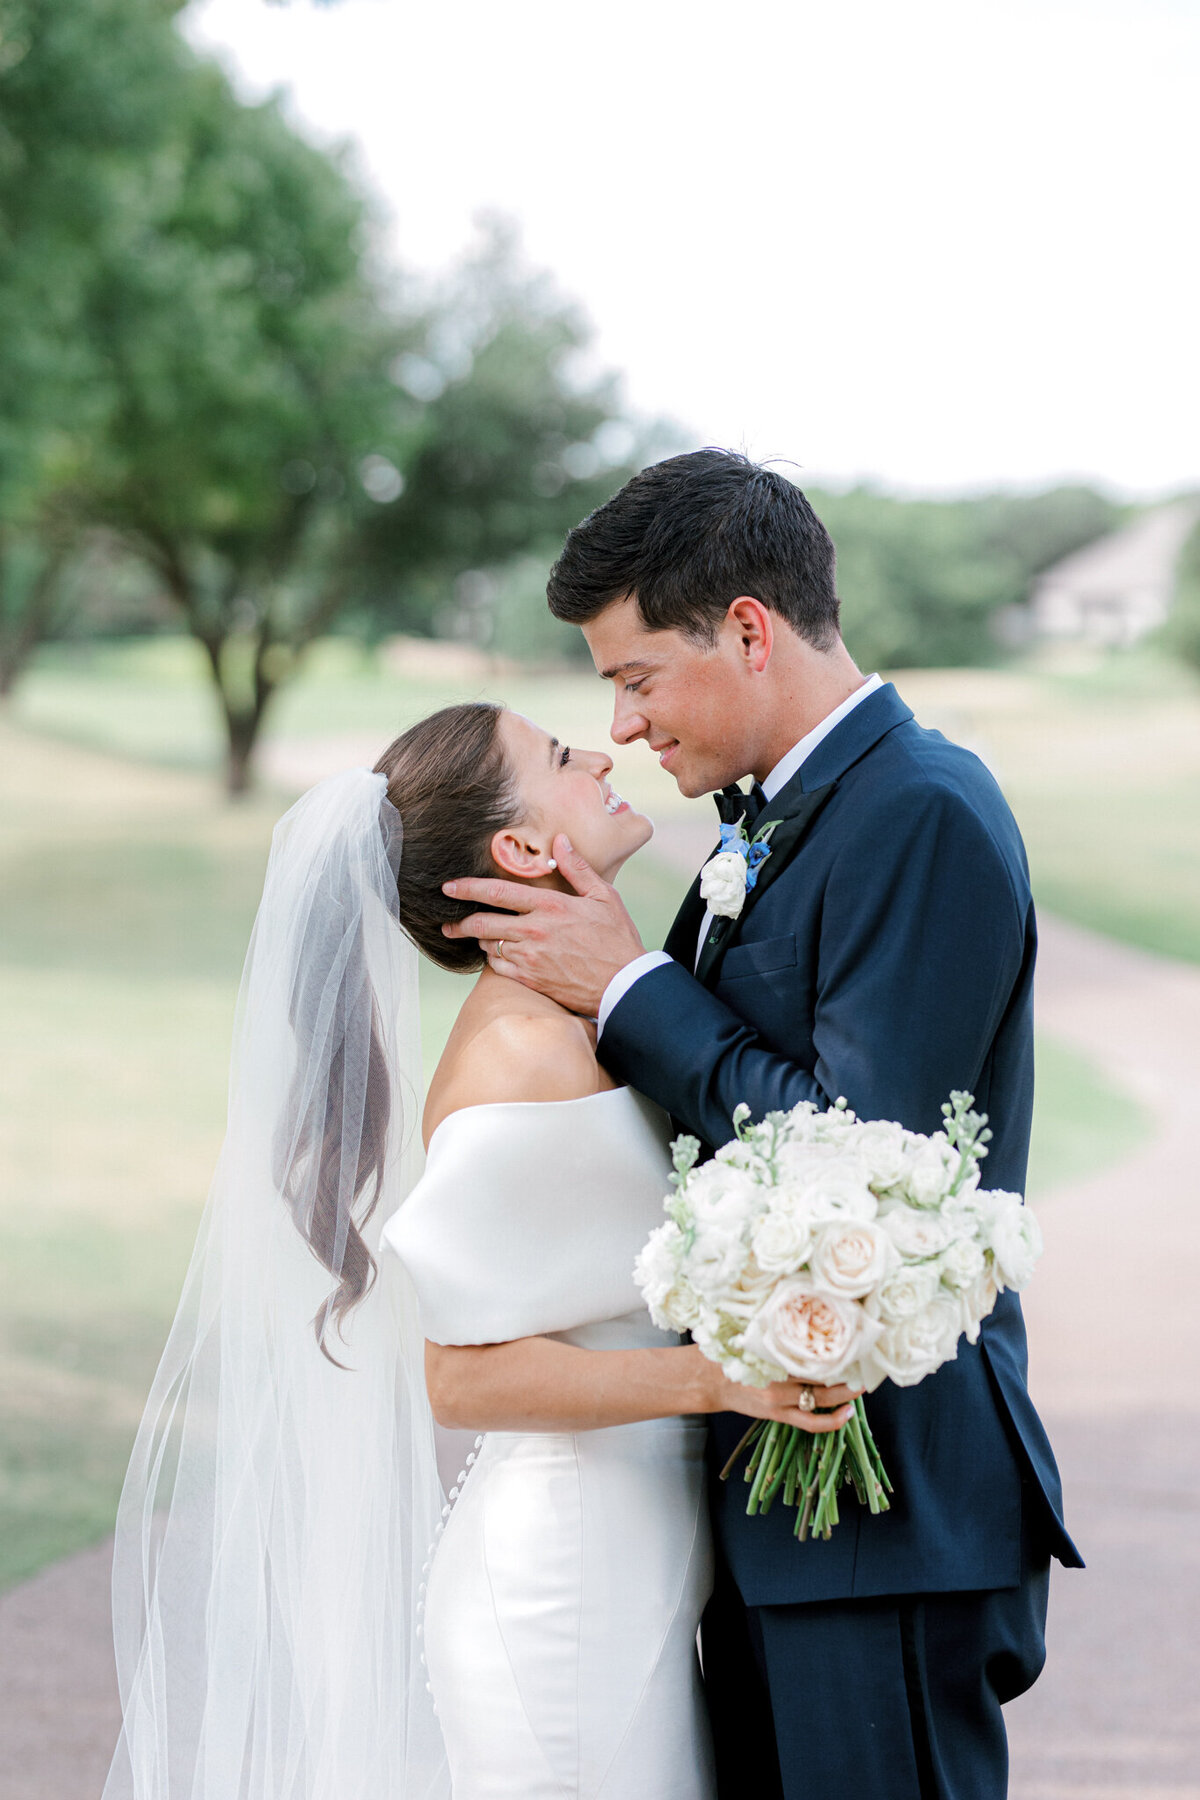 Annie & Logan's Wedding | Dallas Wedding Photographer | Sami Kathryn Photography-10